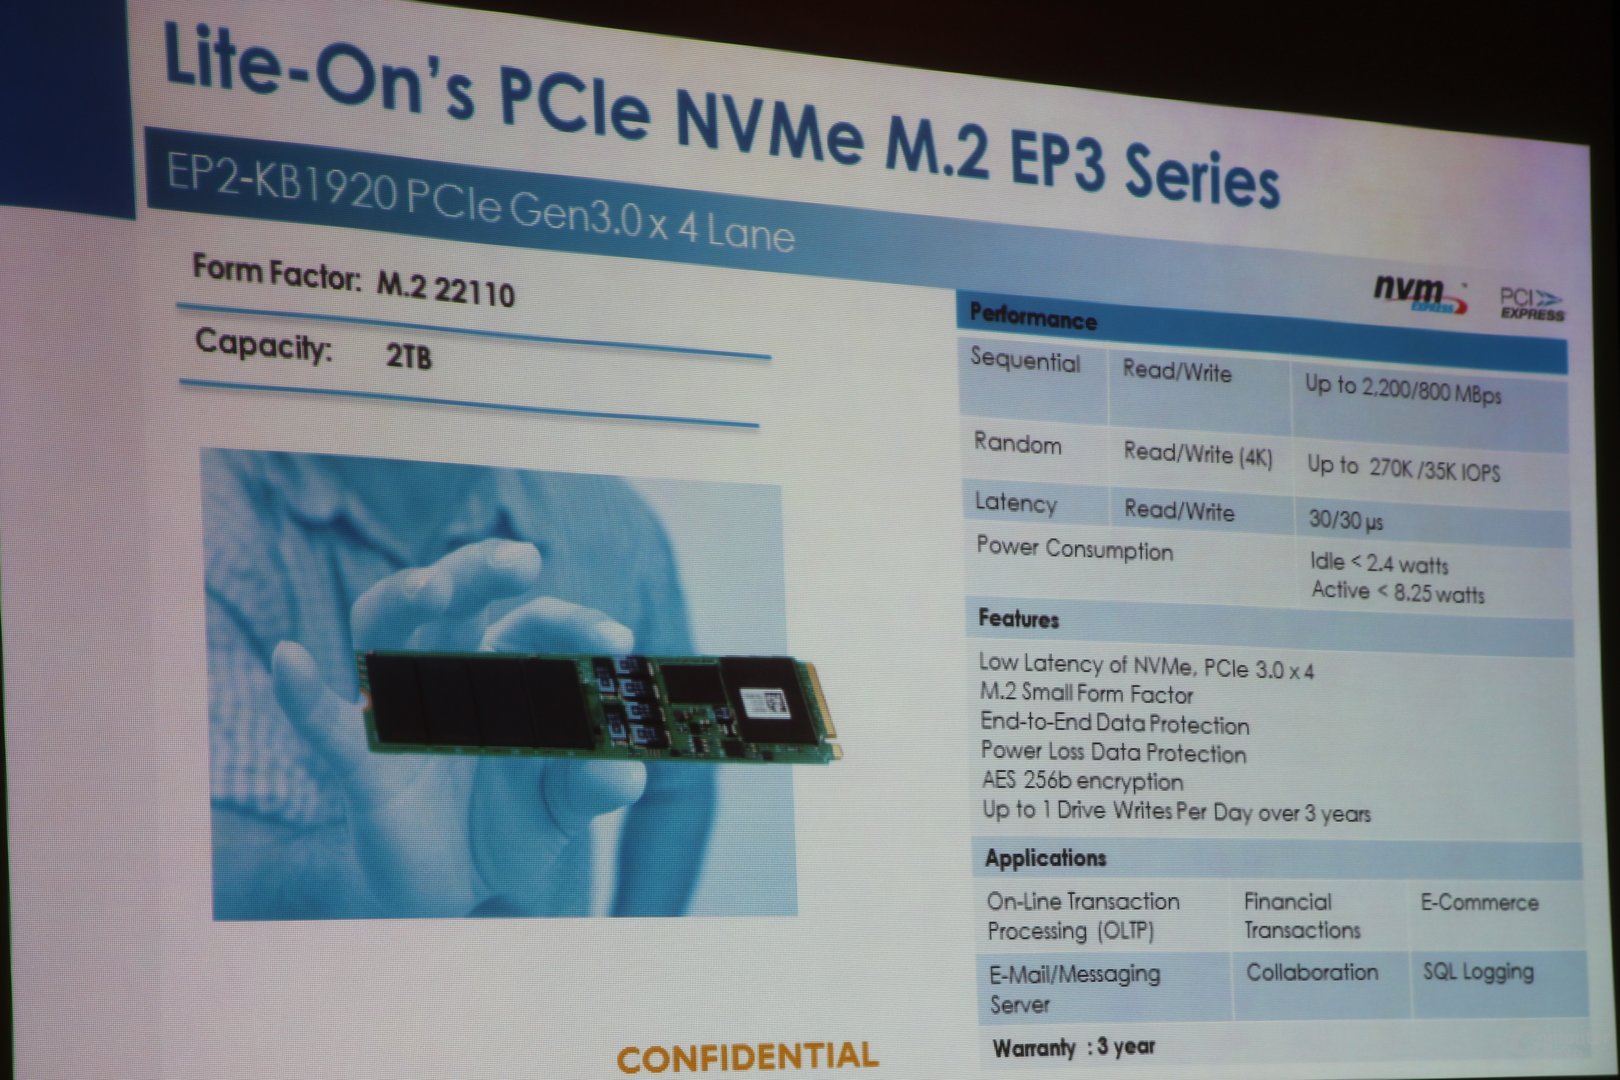 EP3 als M.2-SSD mit PCIe und NVMe